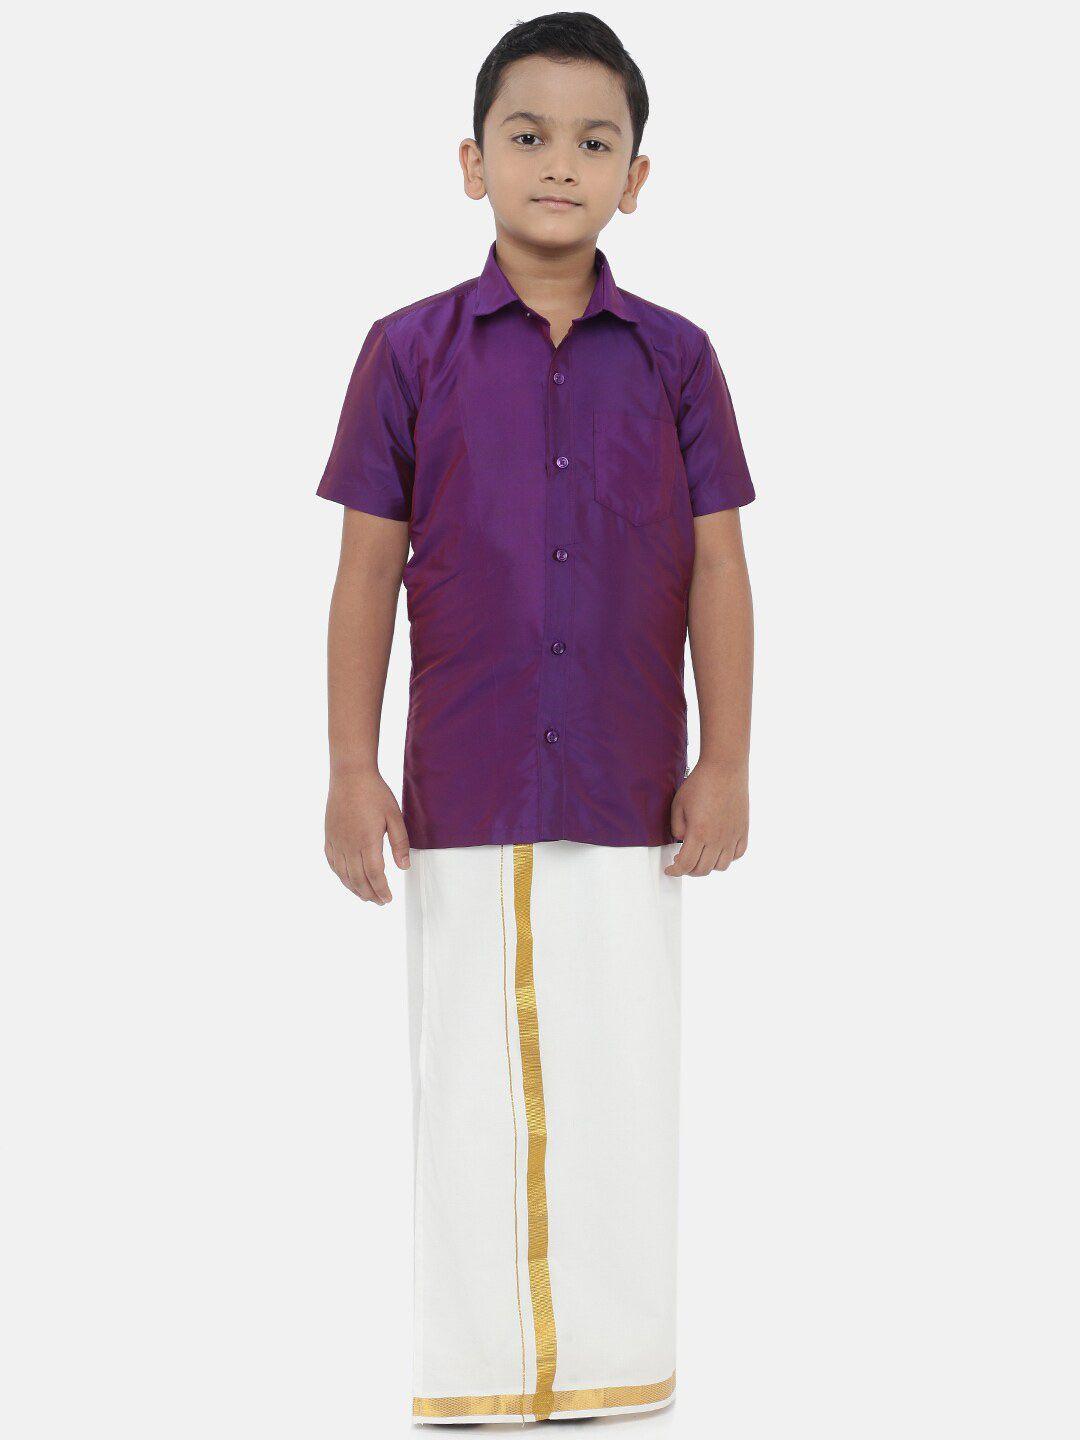 littlestars boys violet & white shirt with dhoti